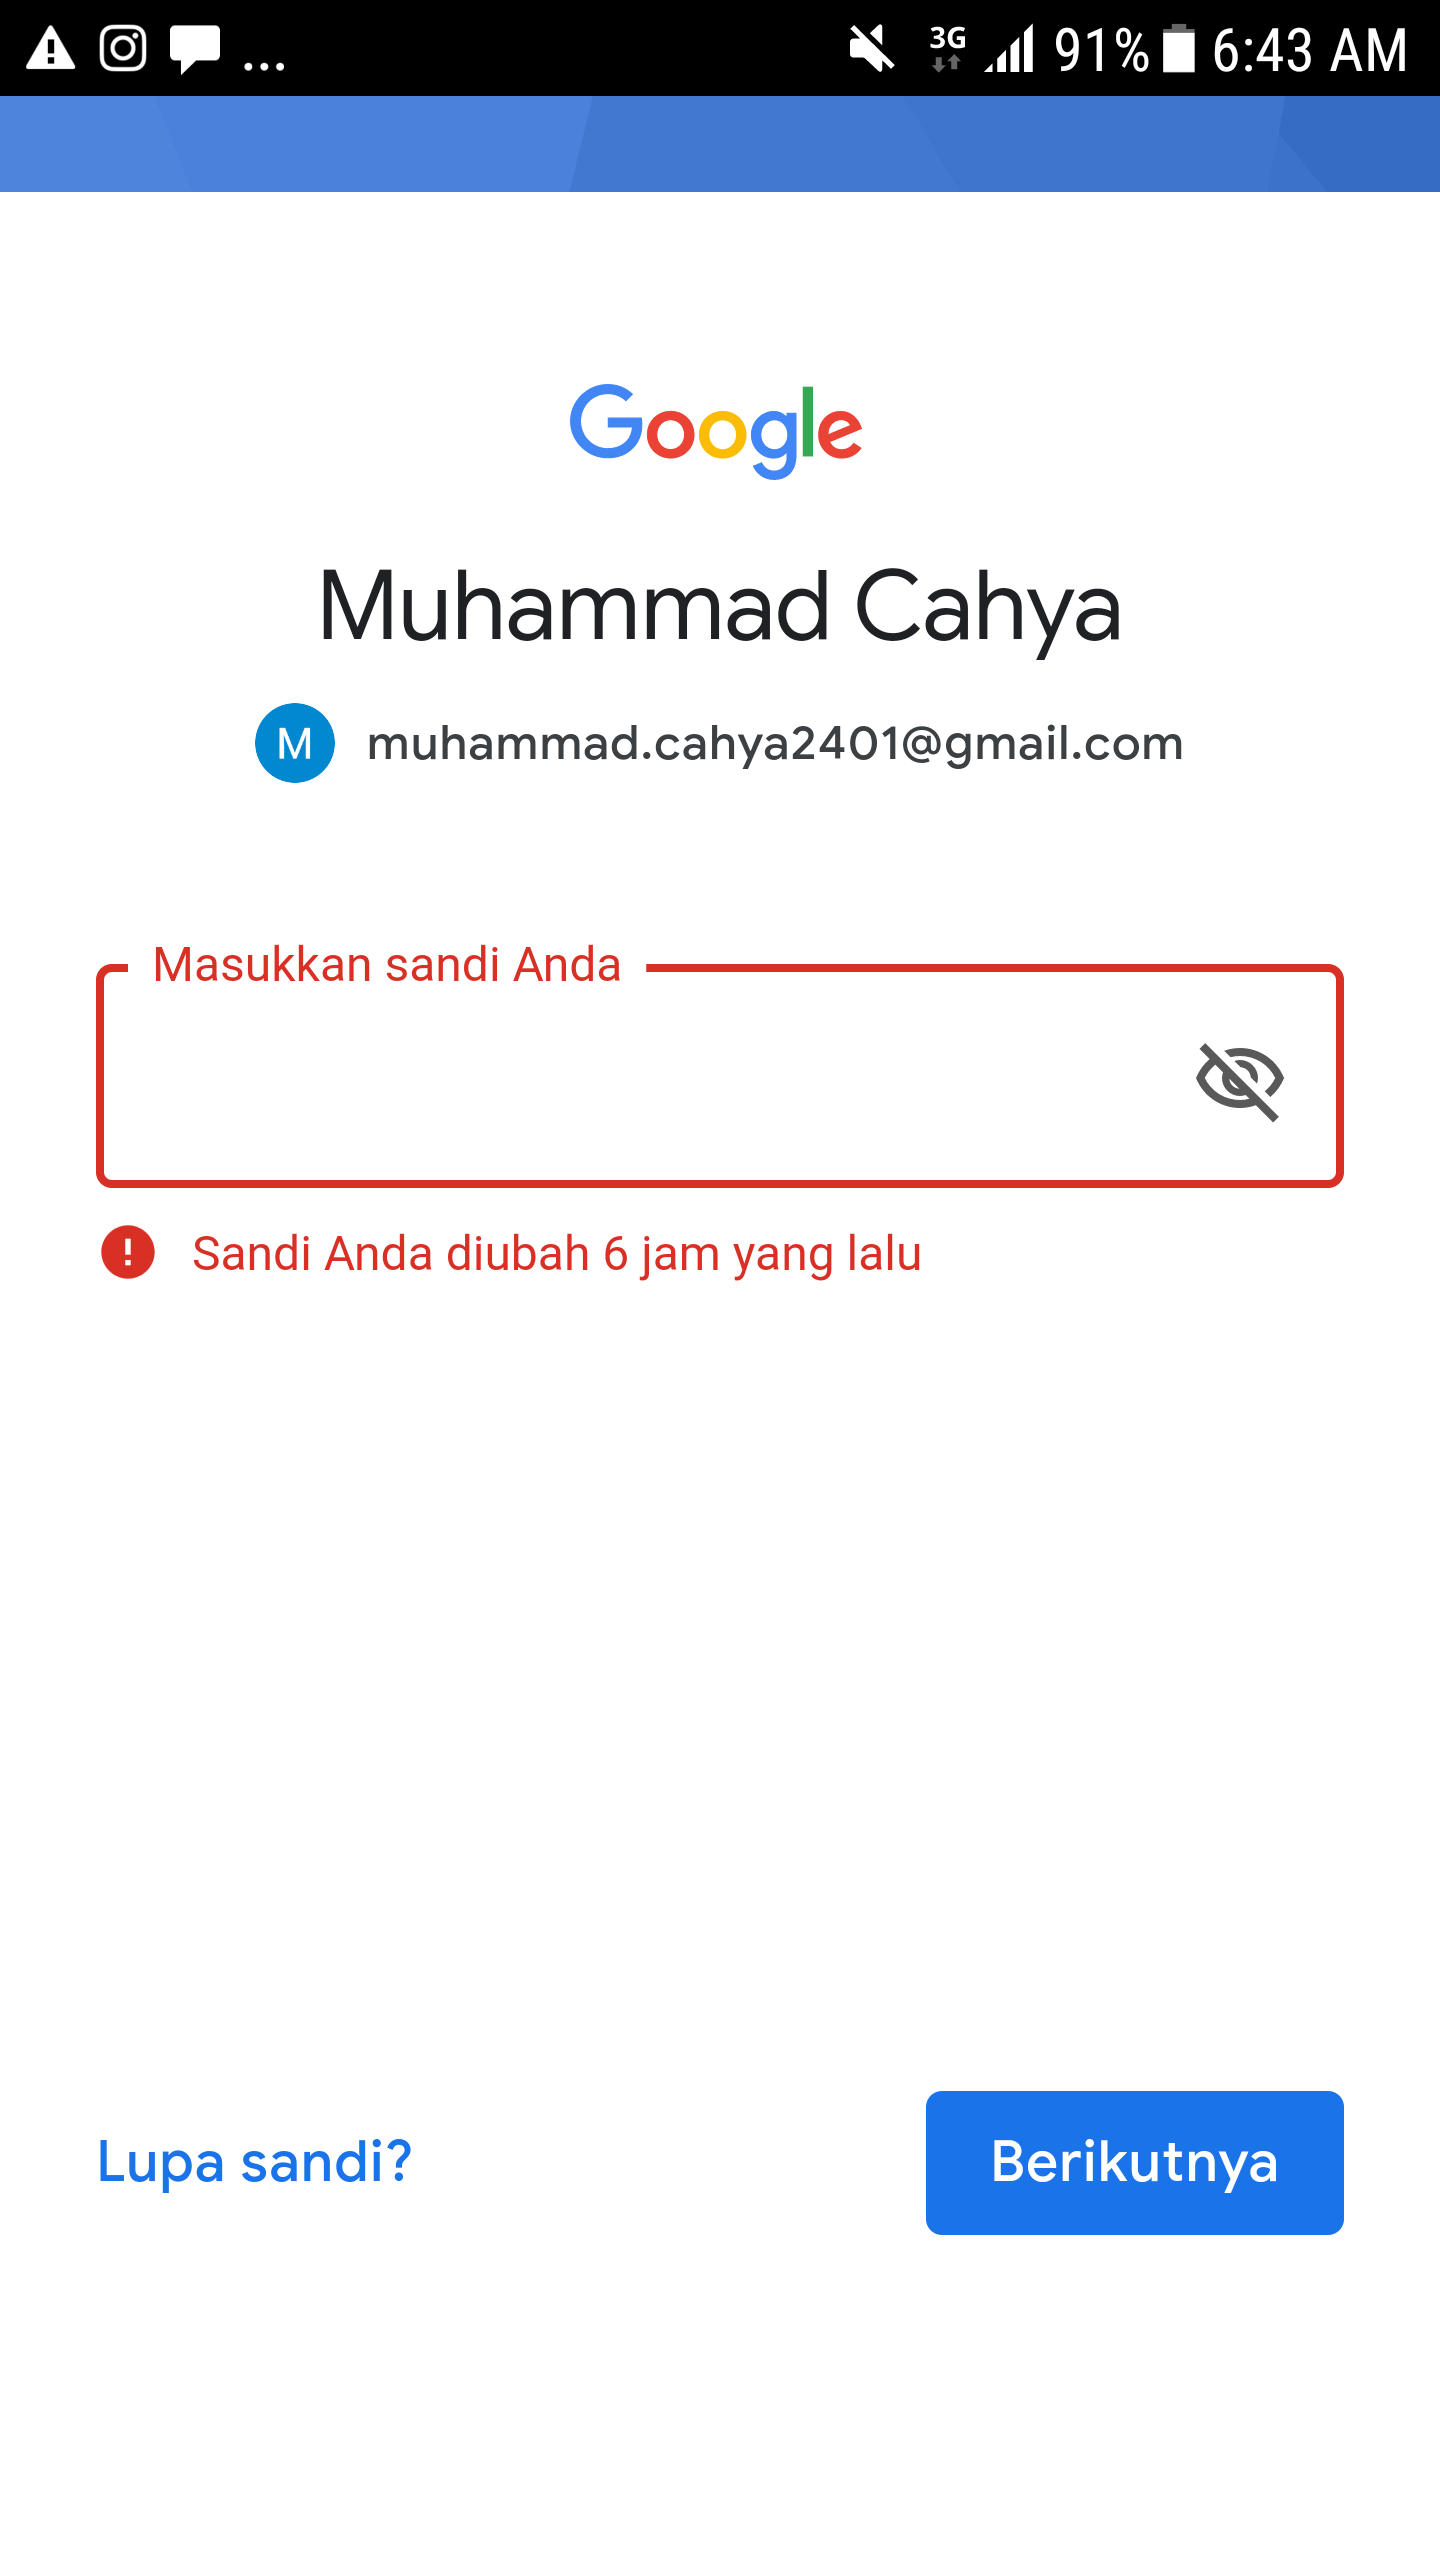 Gmail Saya Sign Out Sendiri Dan Ketika Mau Login Passwordnya Berubah Muhammad Cahya2401 Gmail Com Komunitas Akun Google